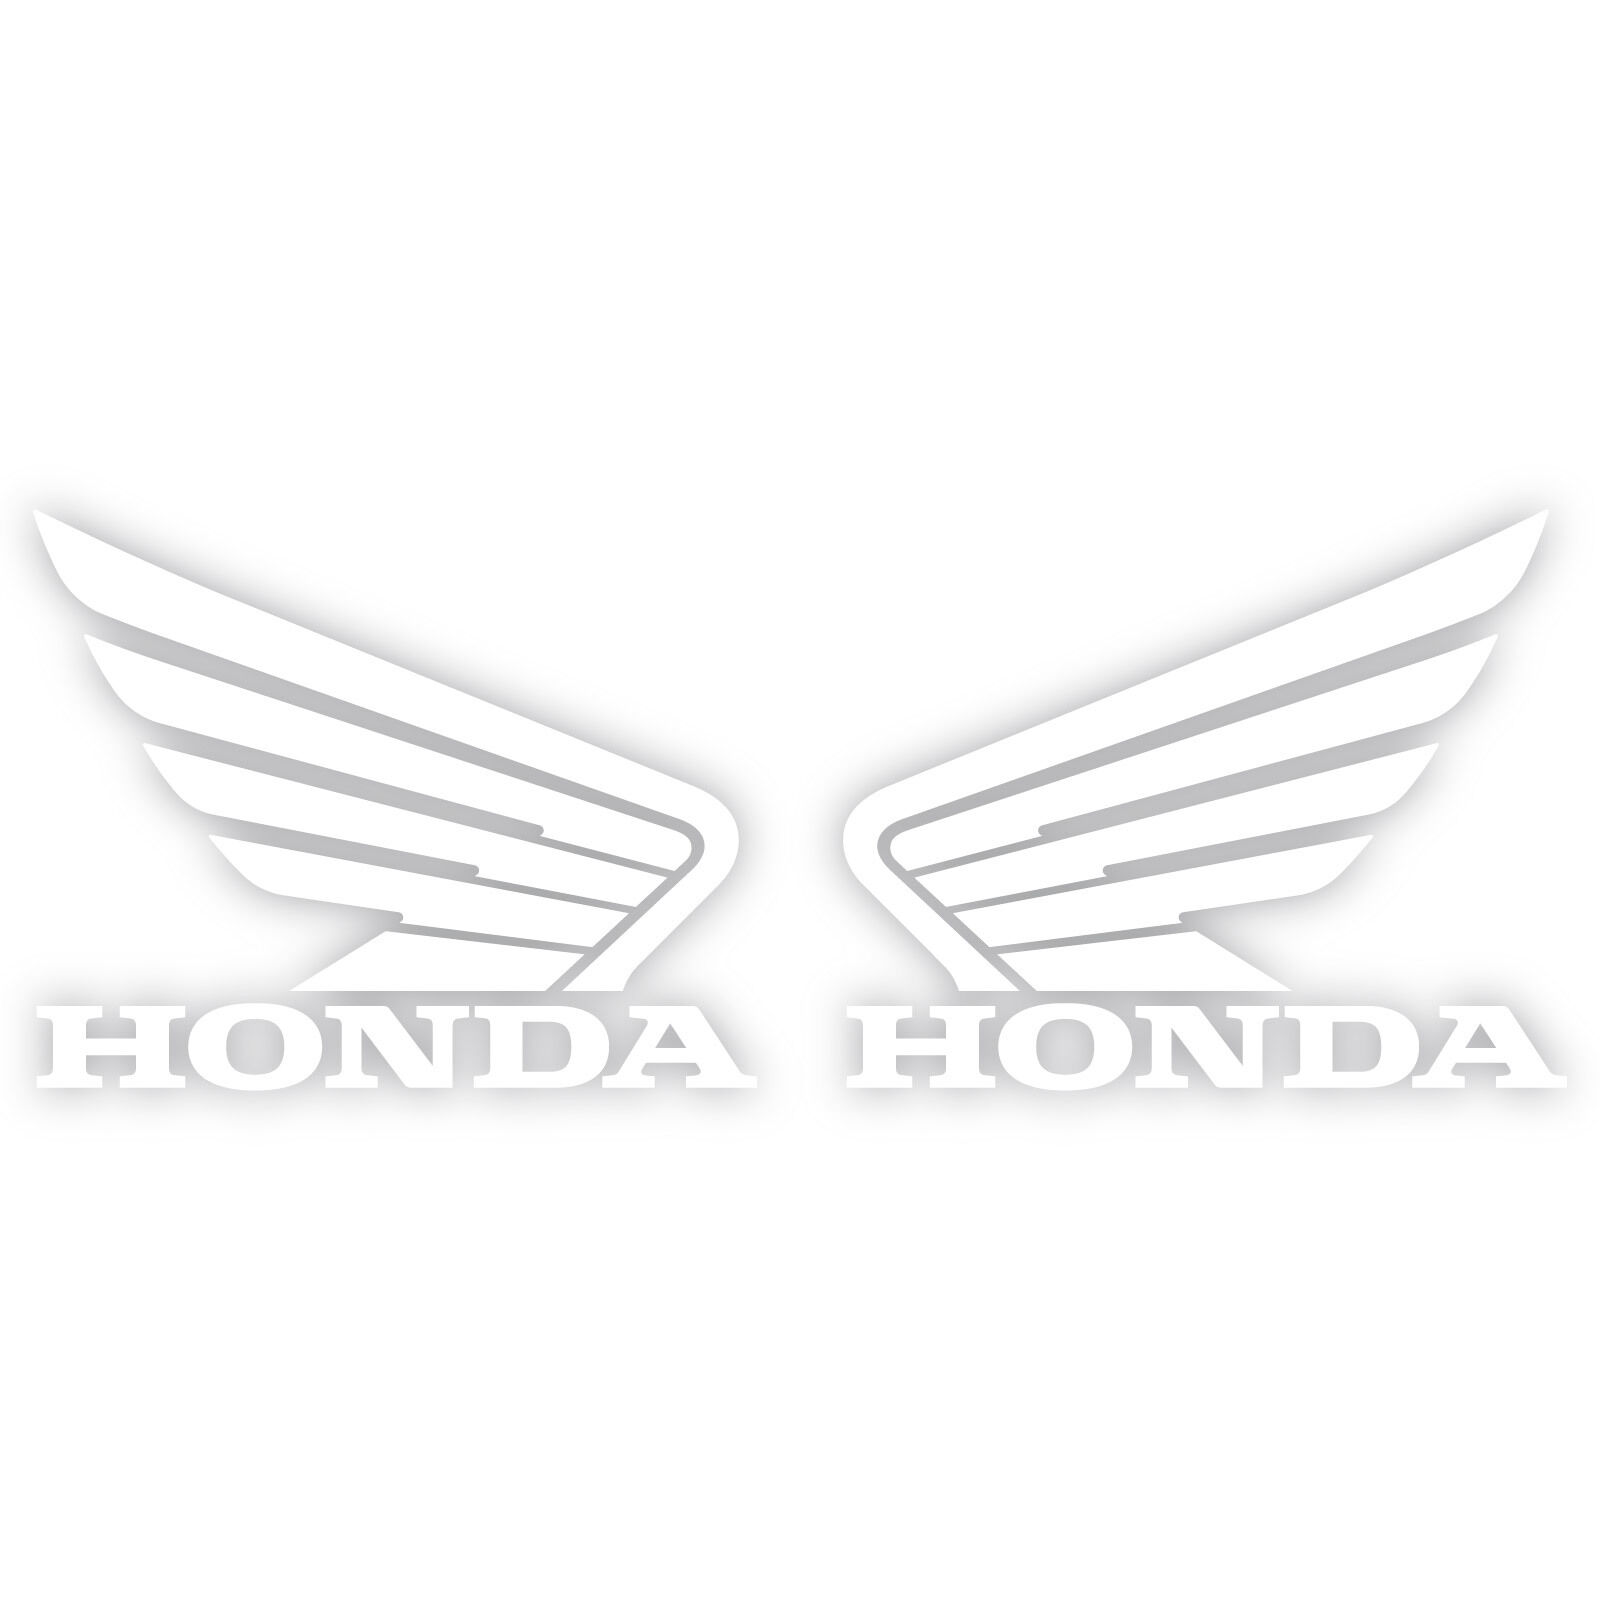 2x Honda Motorcycle Wing Logo 6